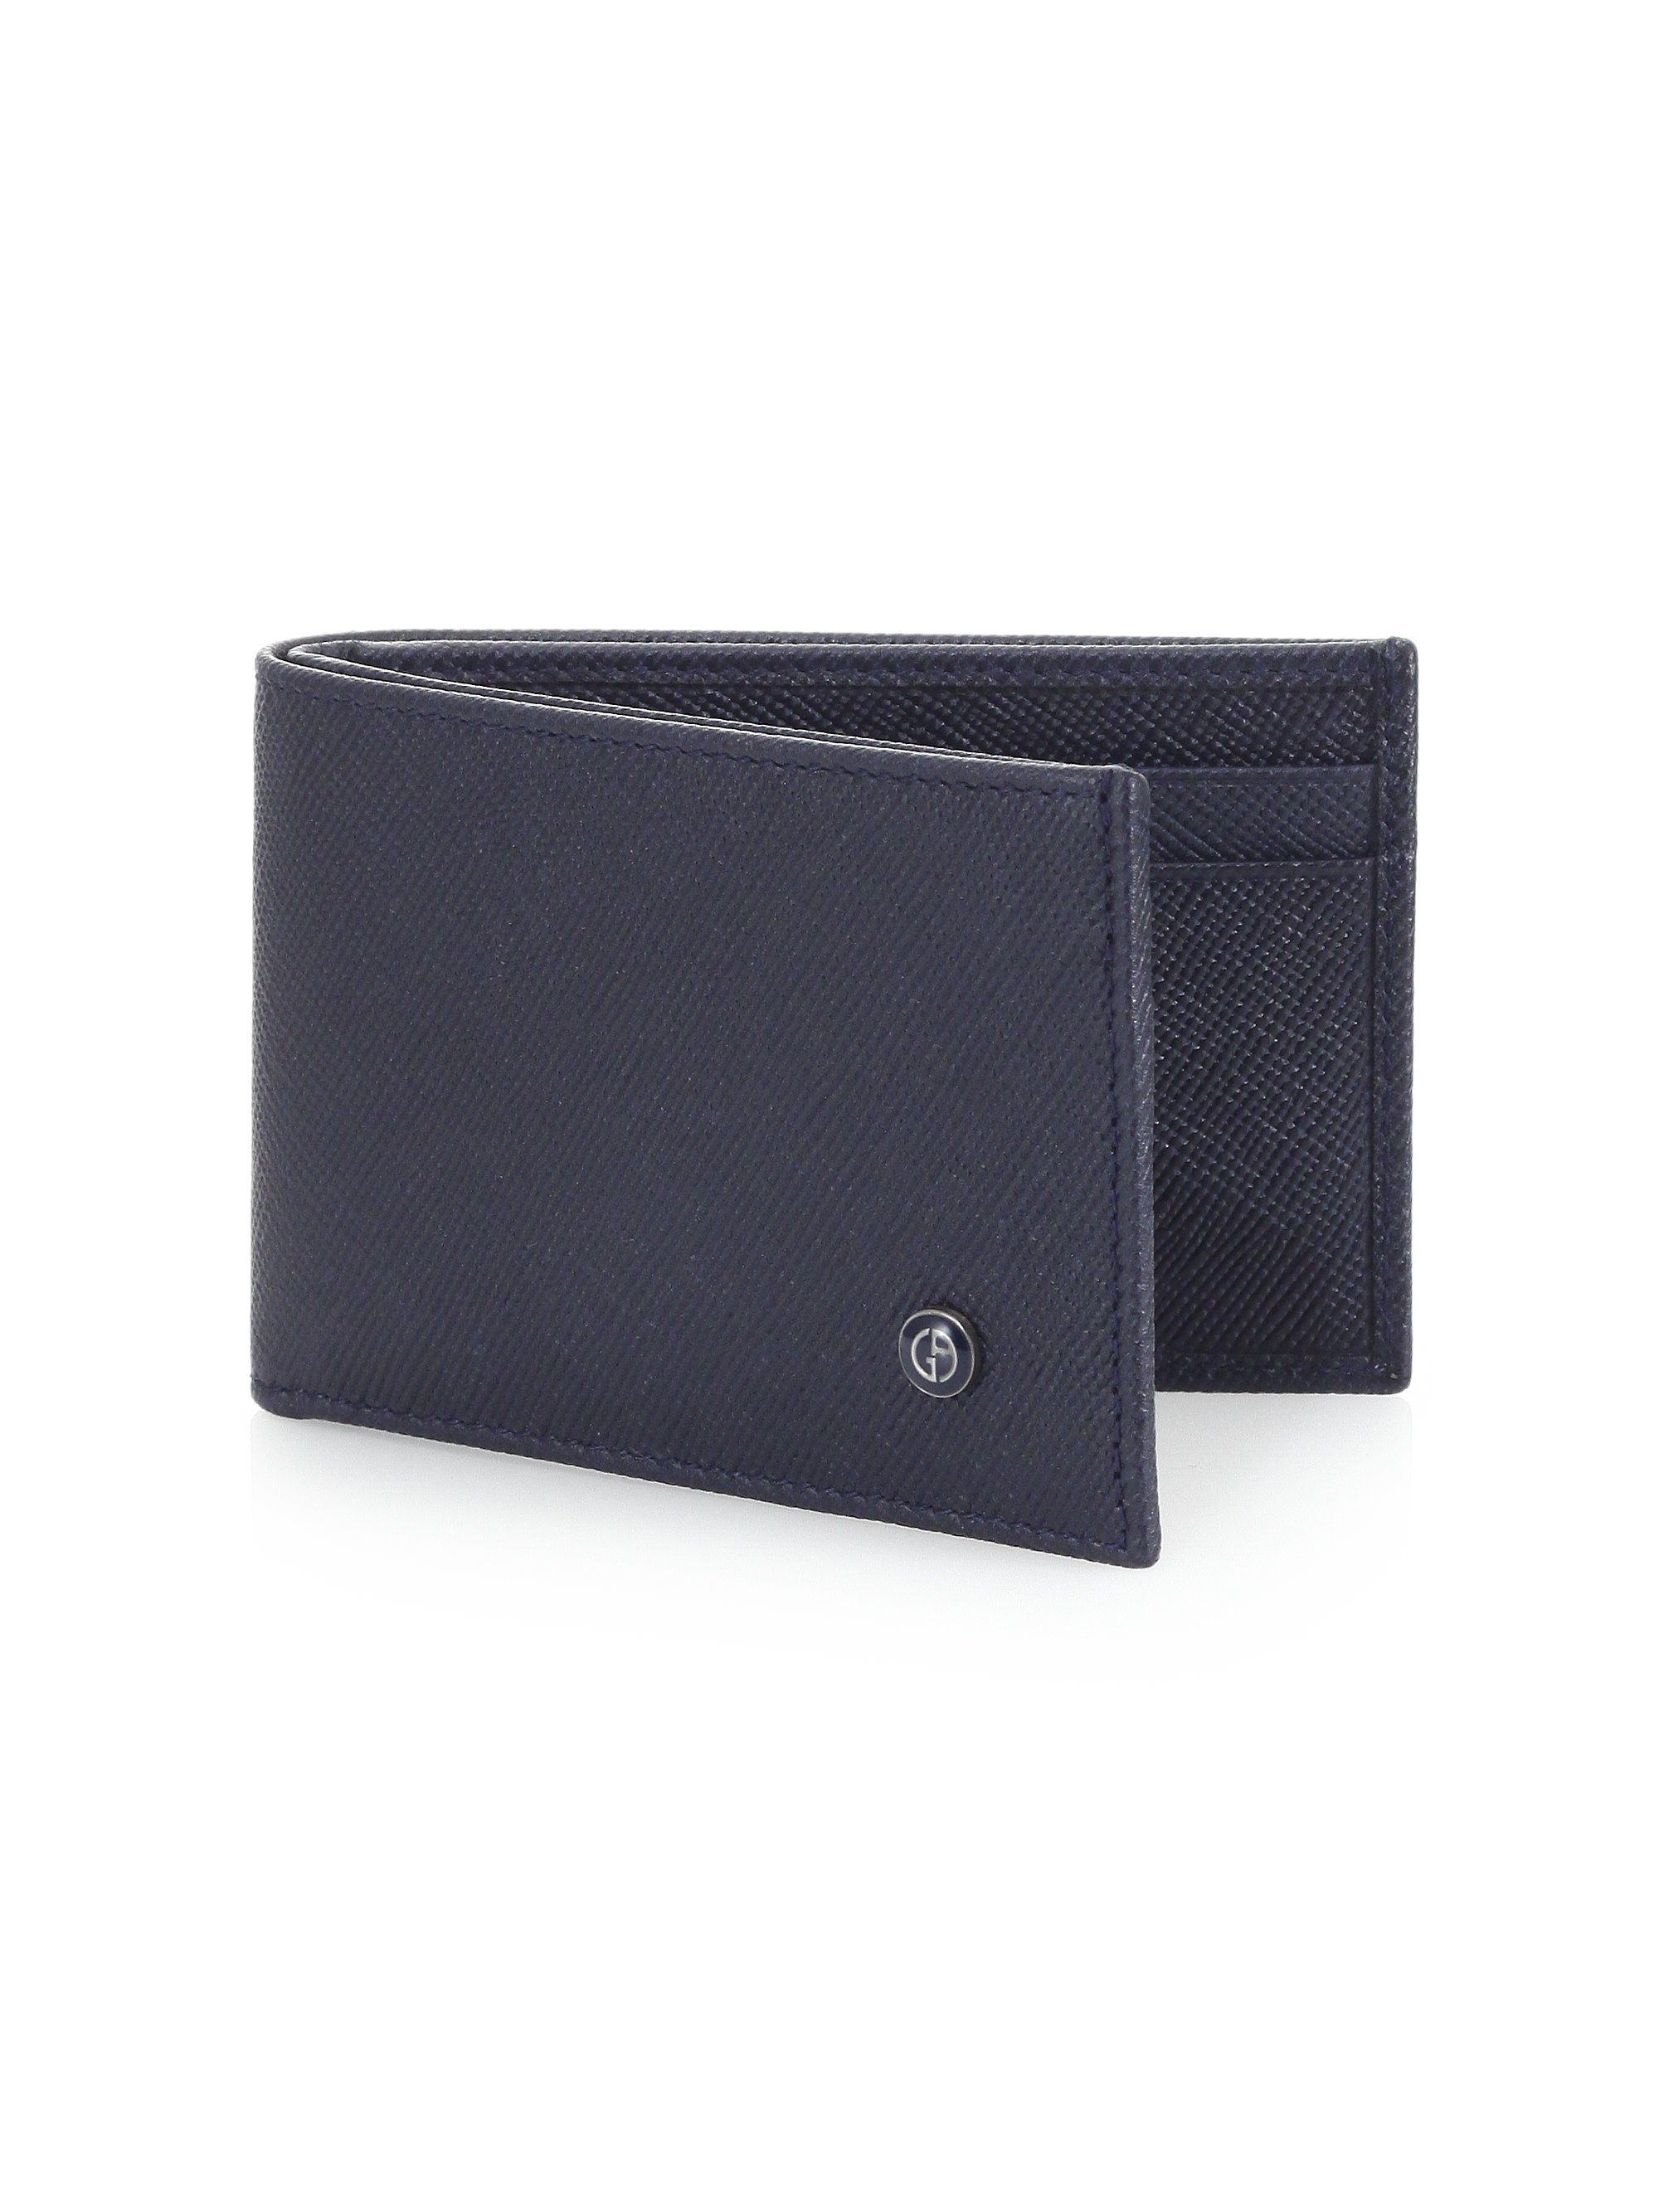 Giorgio armani Saffiano Leather Wallet in Blue for Men | Lyst